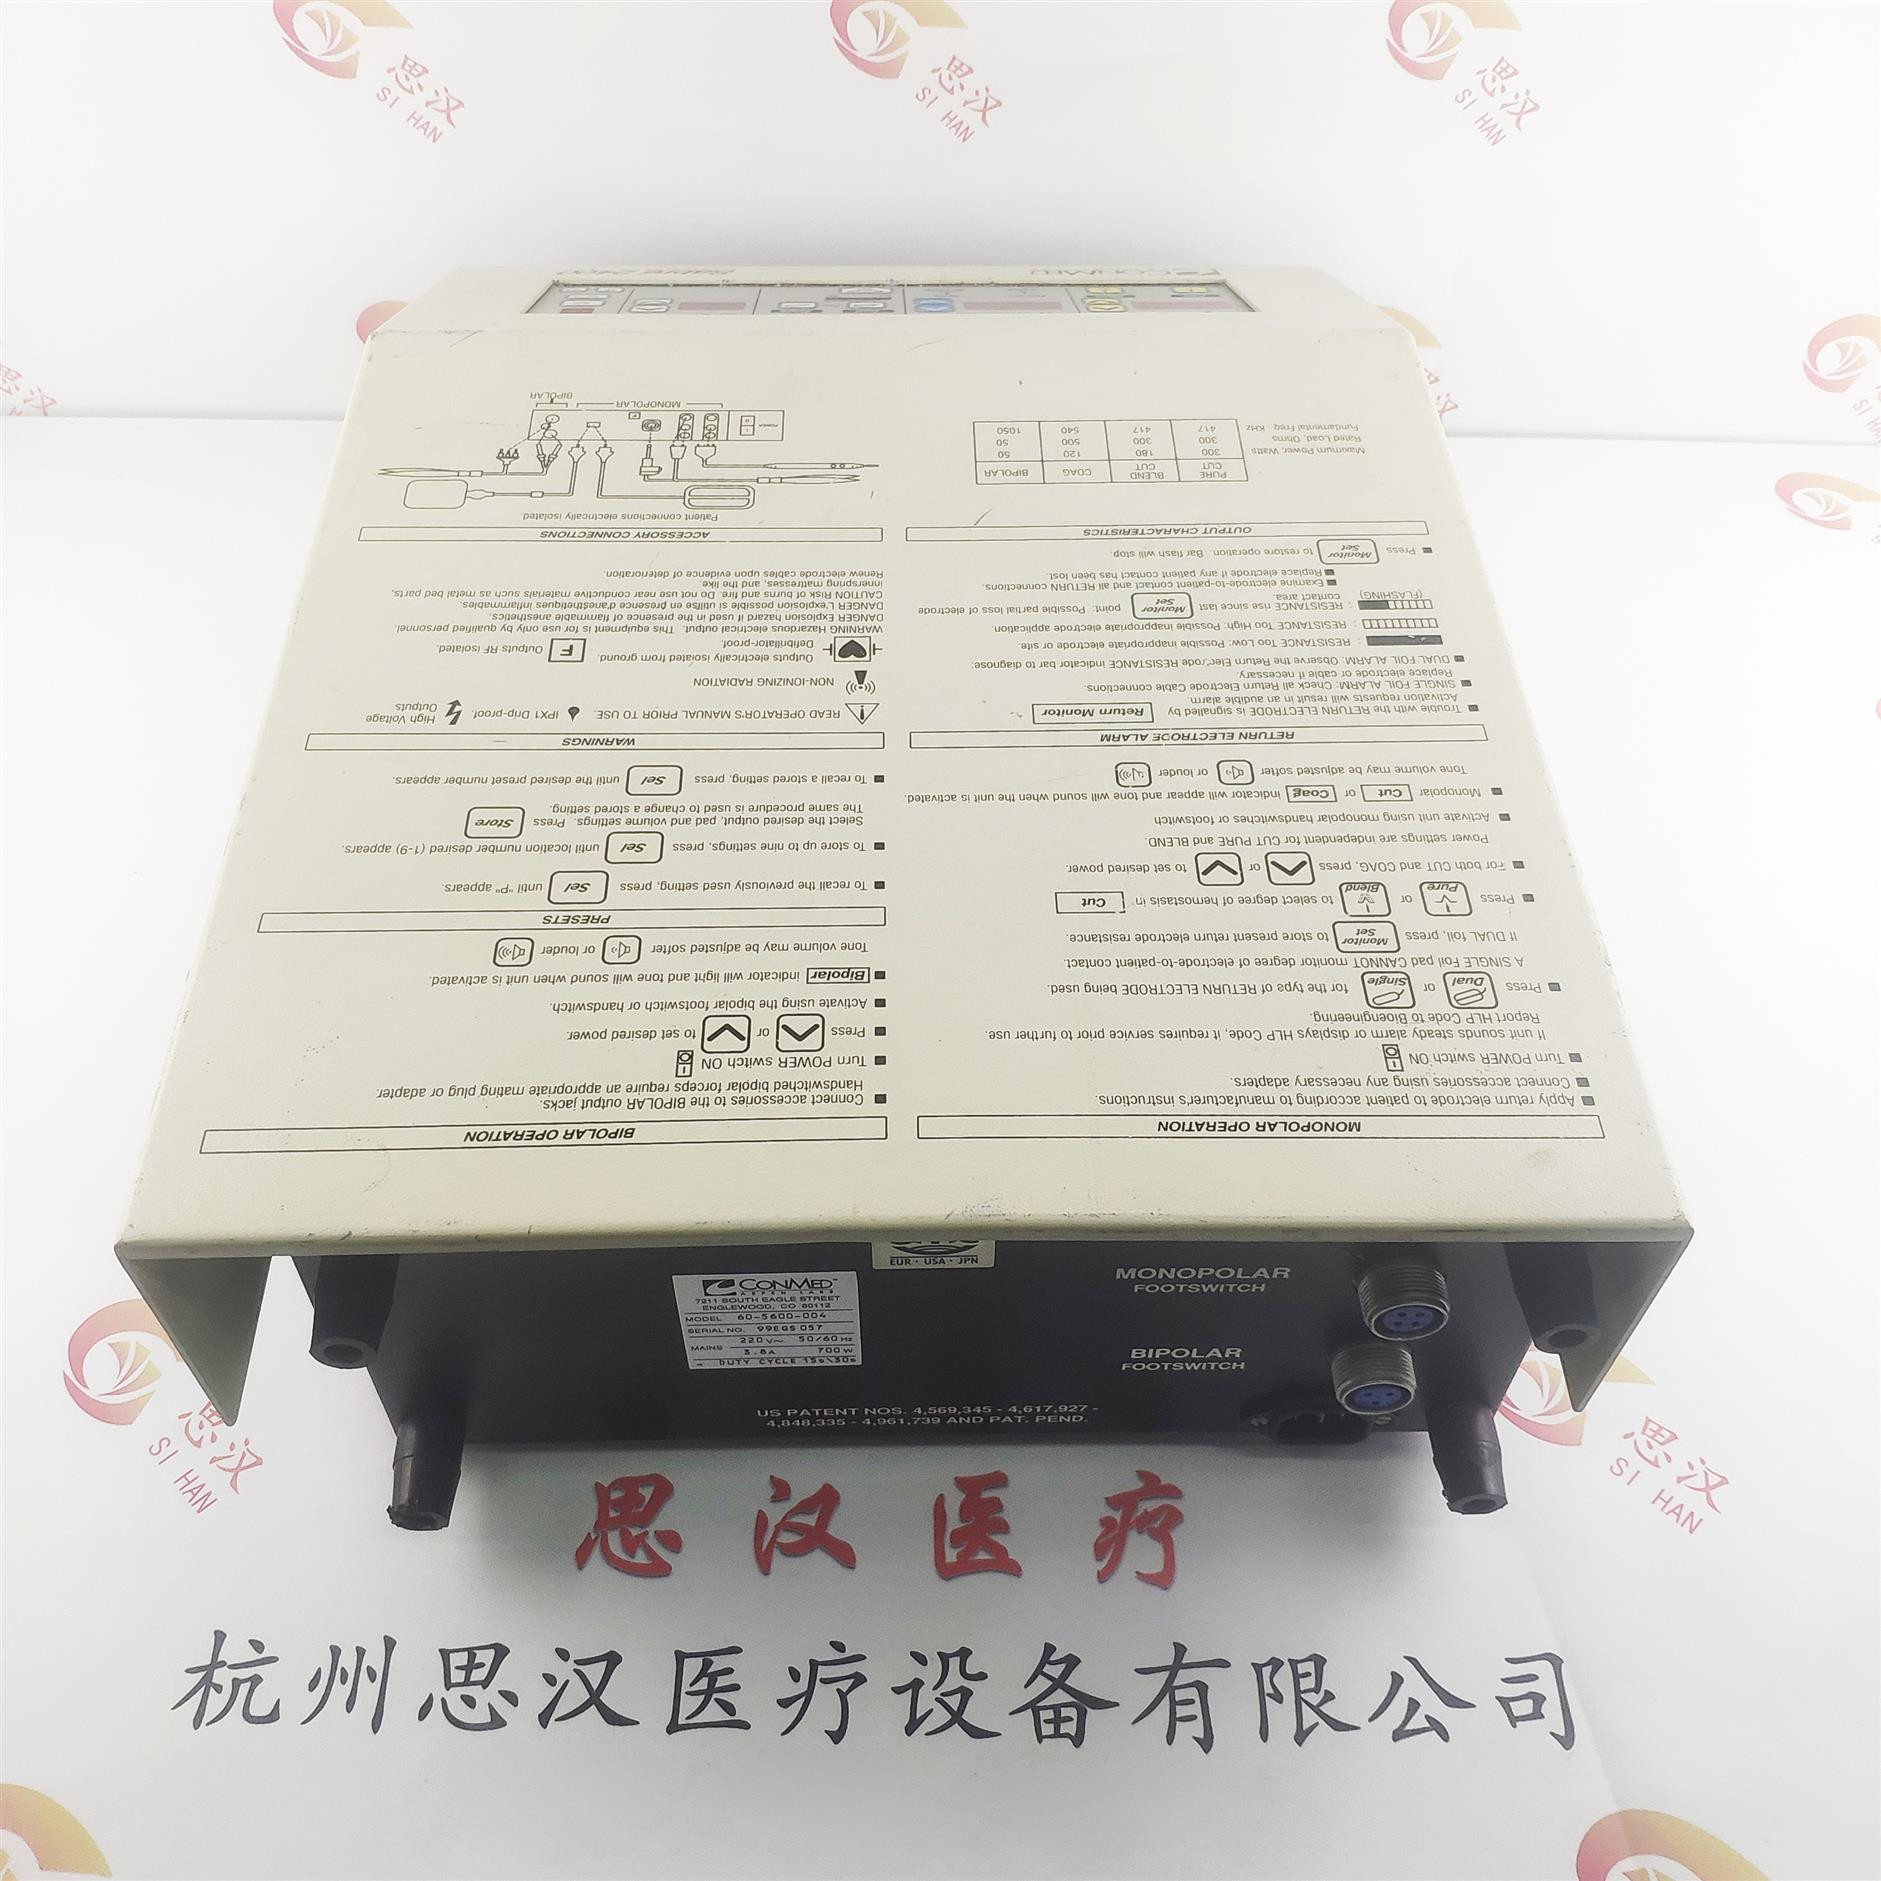 杭州Sabre 2400主板维修公司 杭州思汉医疗设备有限公司